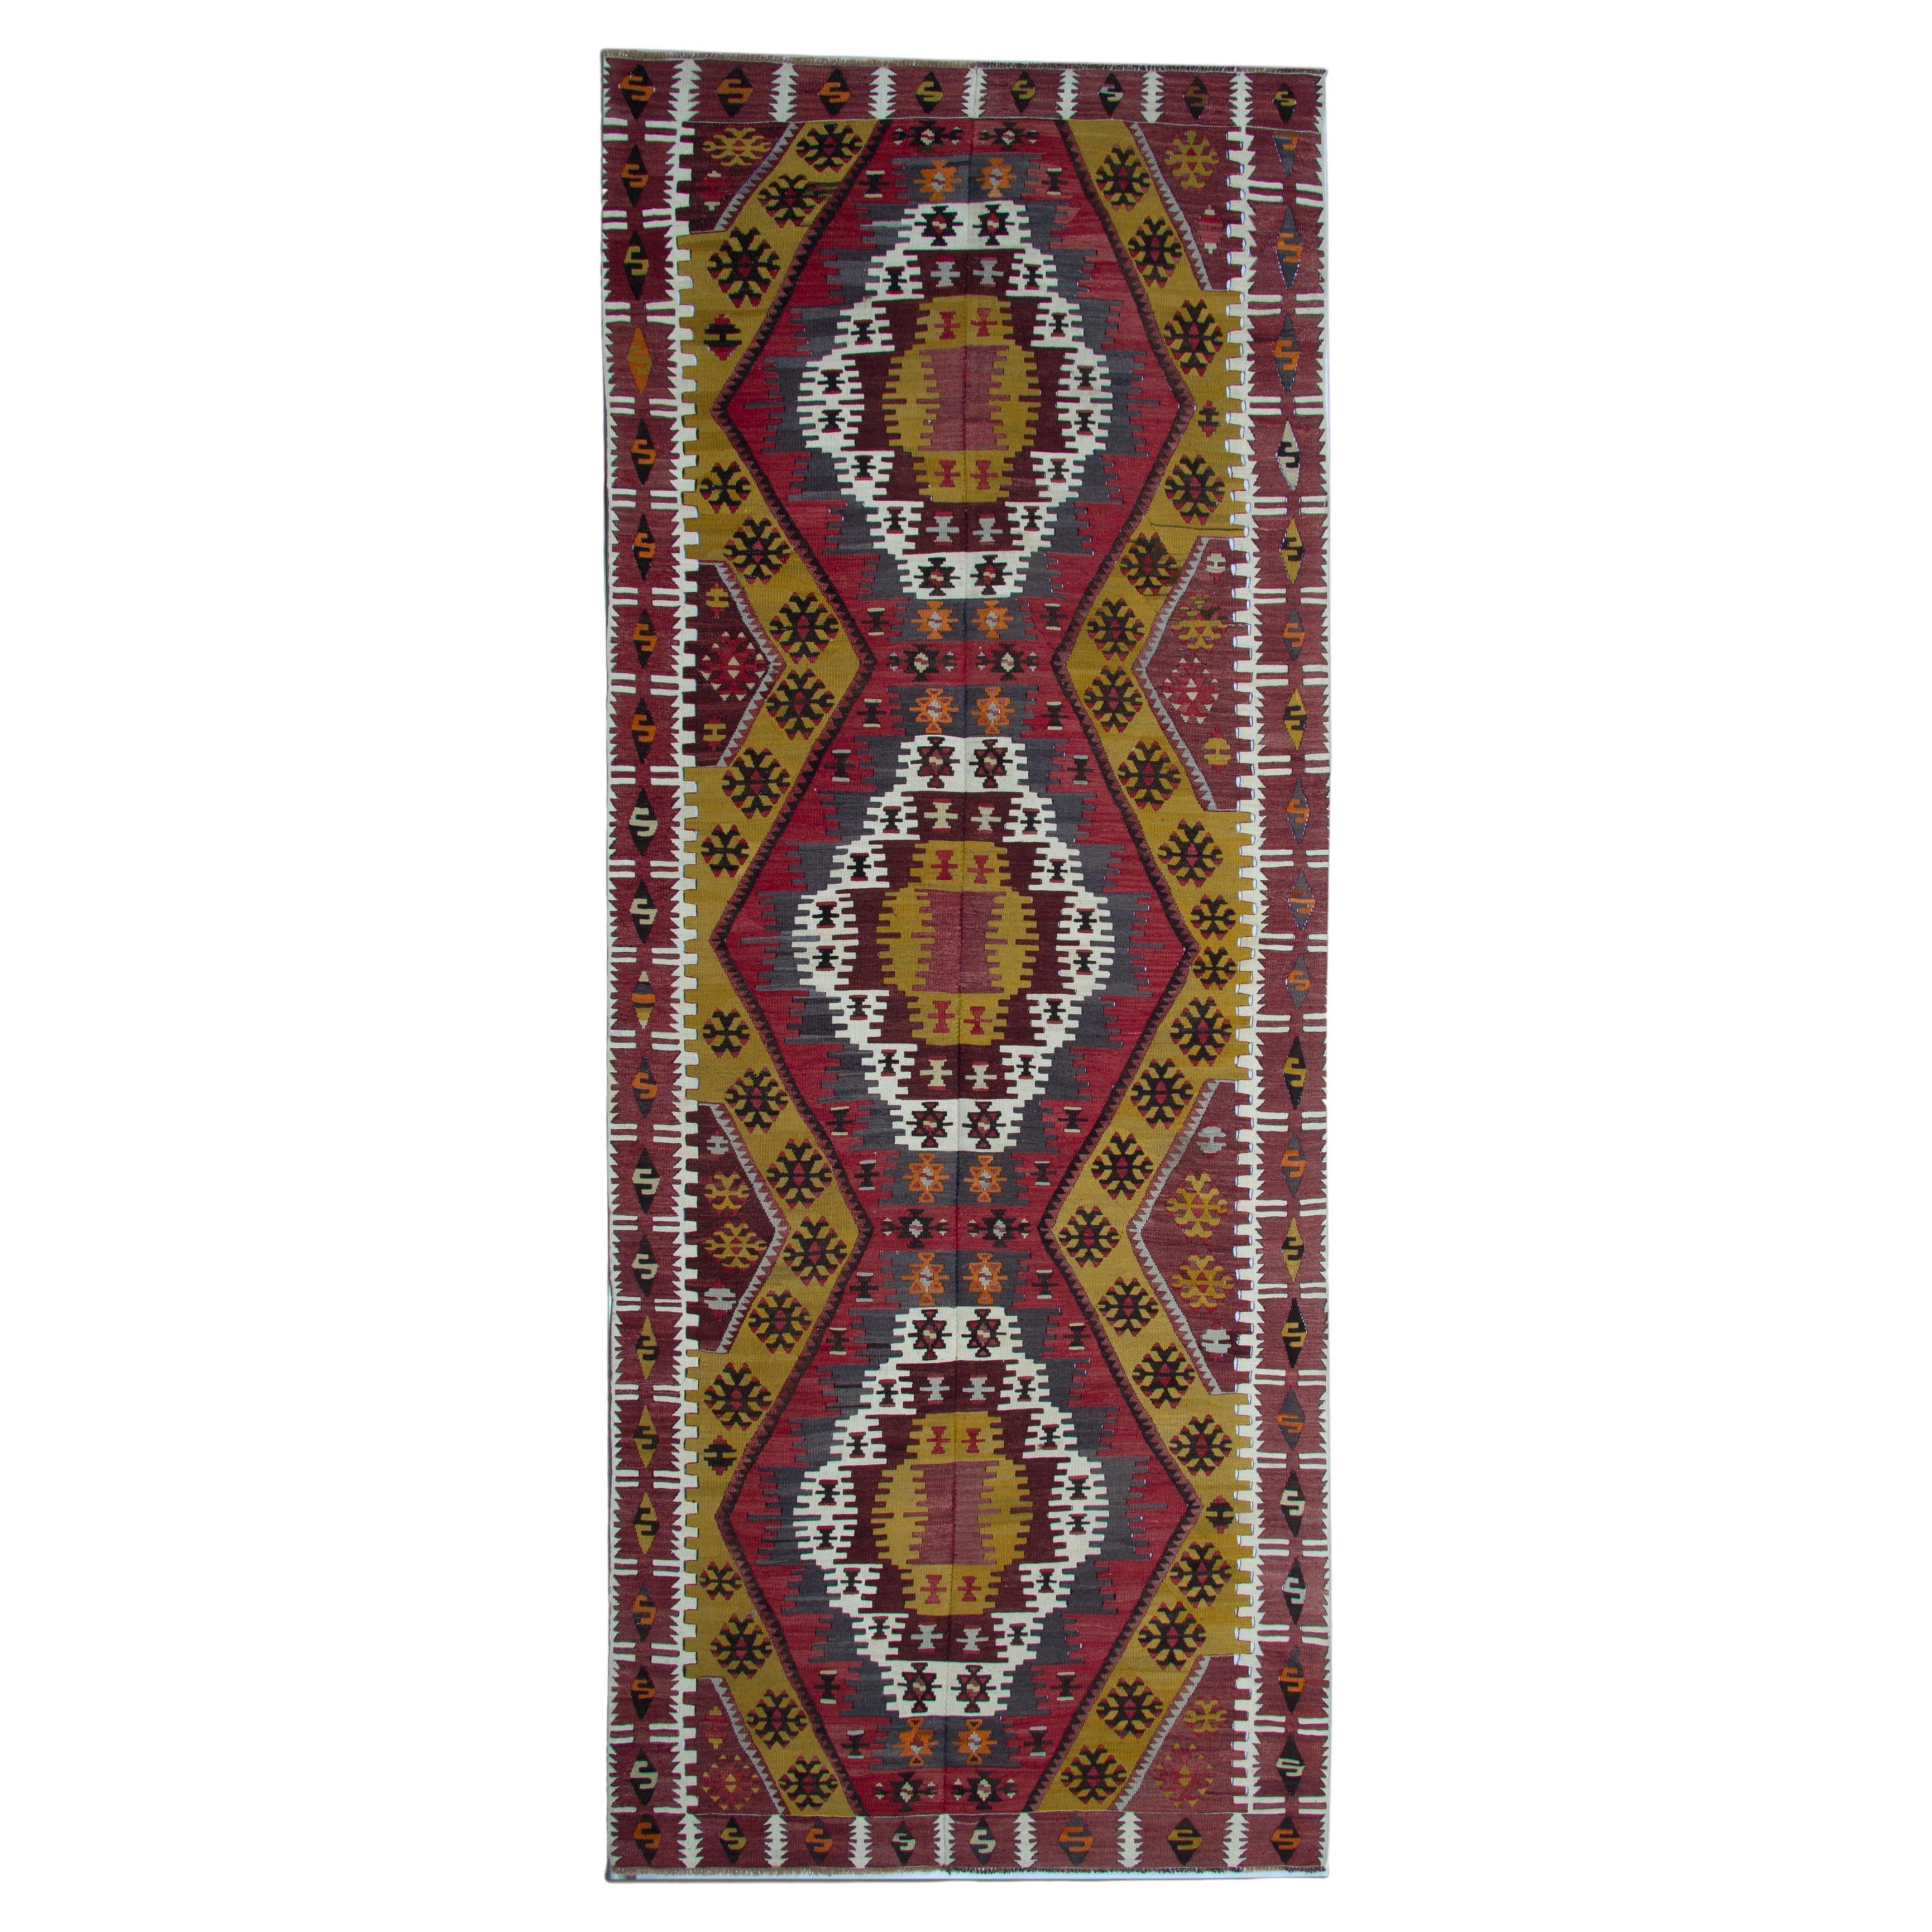 Turkish Kilim Rugs, Antique Runner Rug, Gold Rug Stair Runner Handmade Carpet